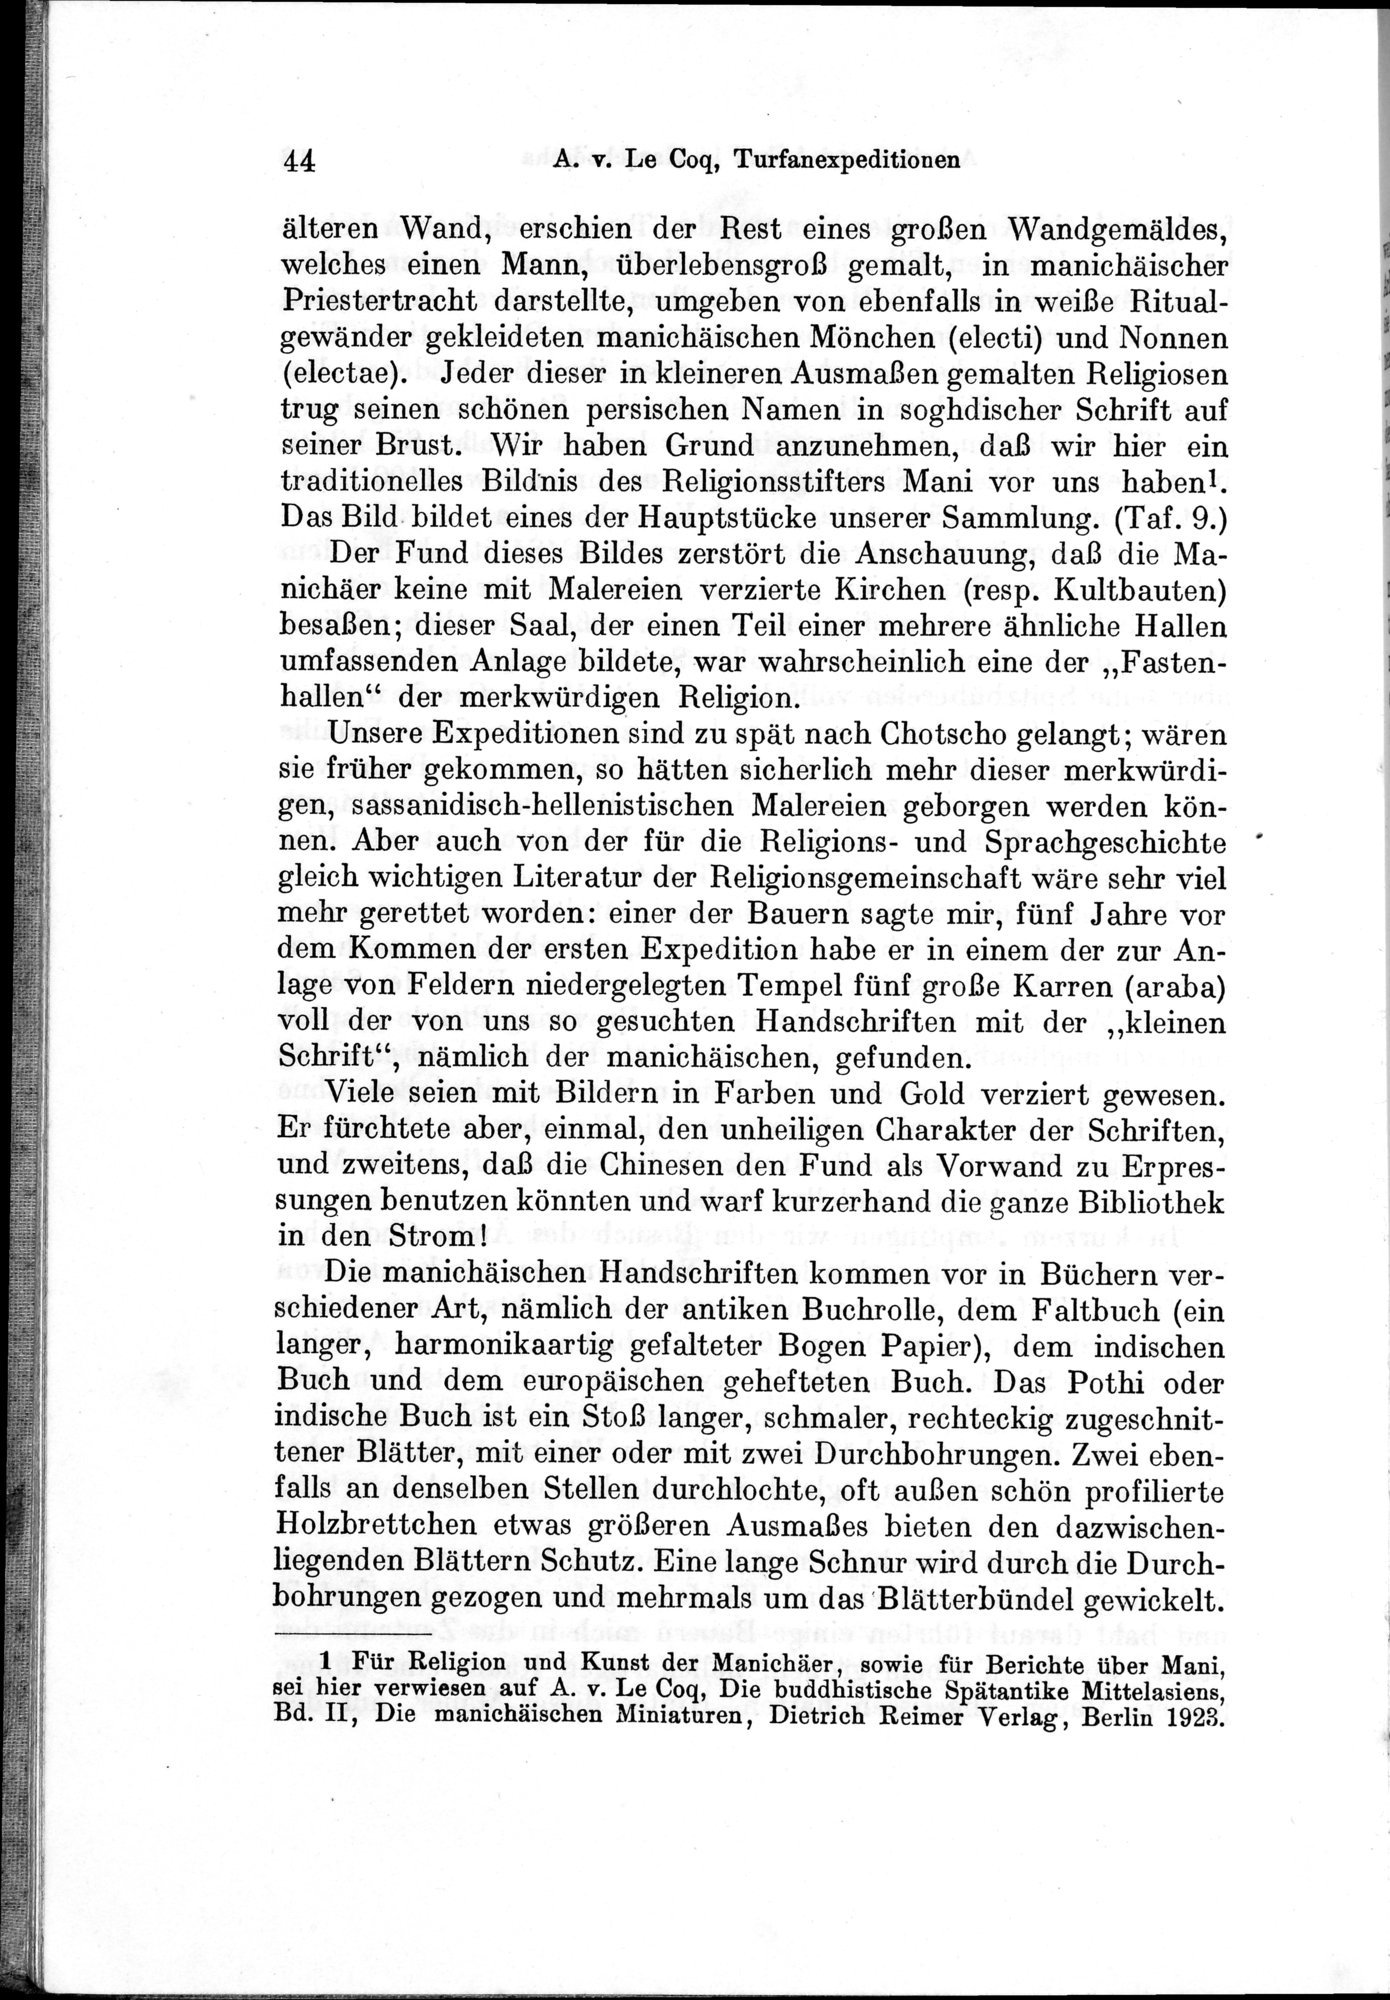 Auf Hellas Spuren in Ostturkistan : vol.1 / Page 70 (Grayscale High Resolution Image)